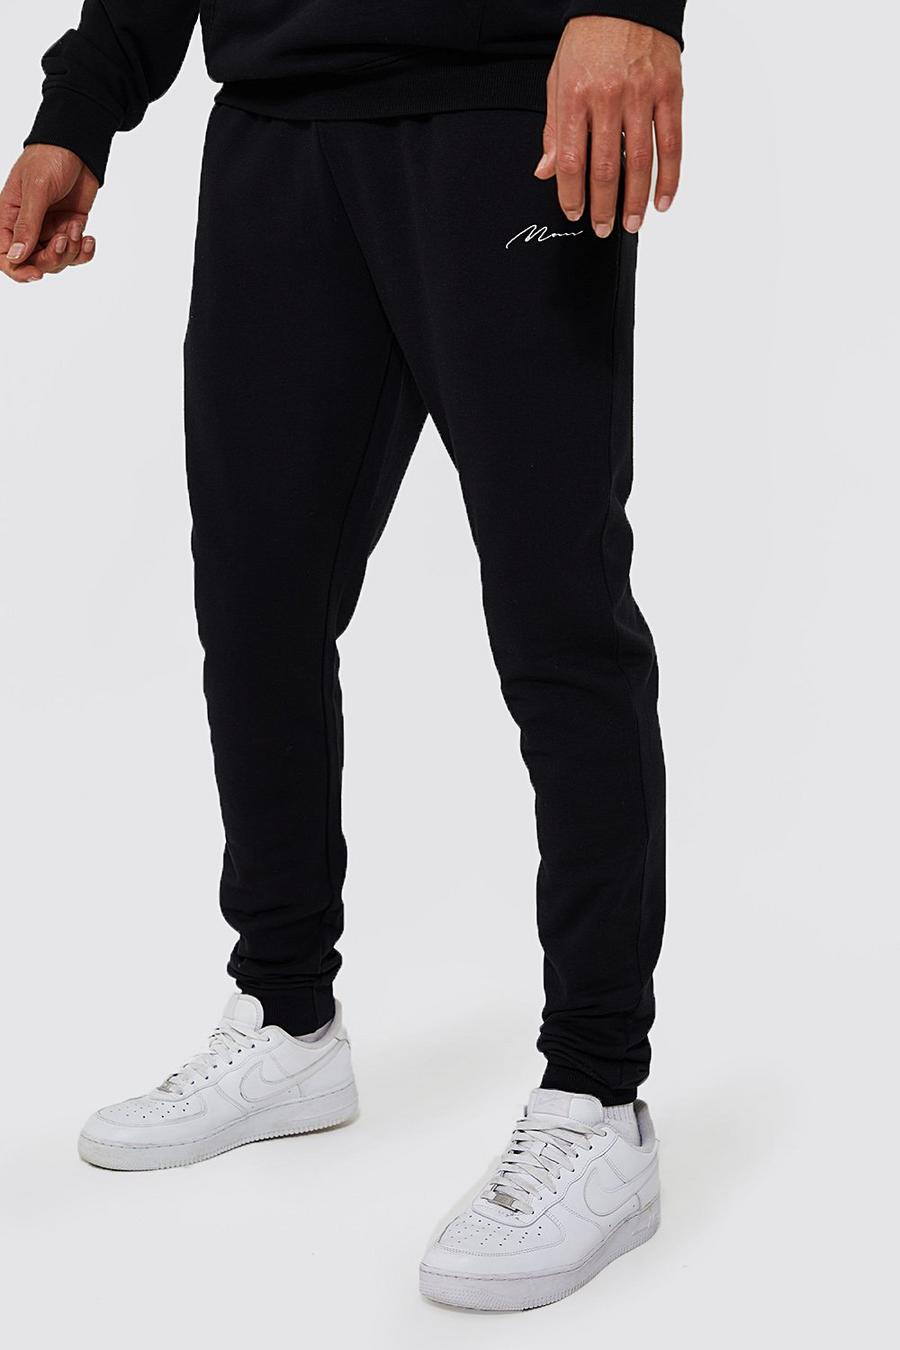 Black מכנסי ריצה סקיני מבד משולב בכותנת REEL עם כיתוב Man, לגברים גבוהים